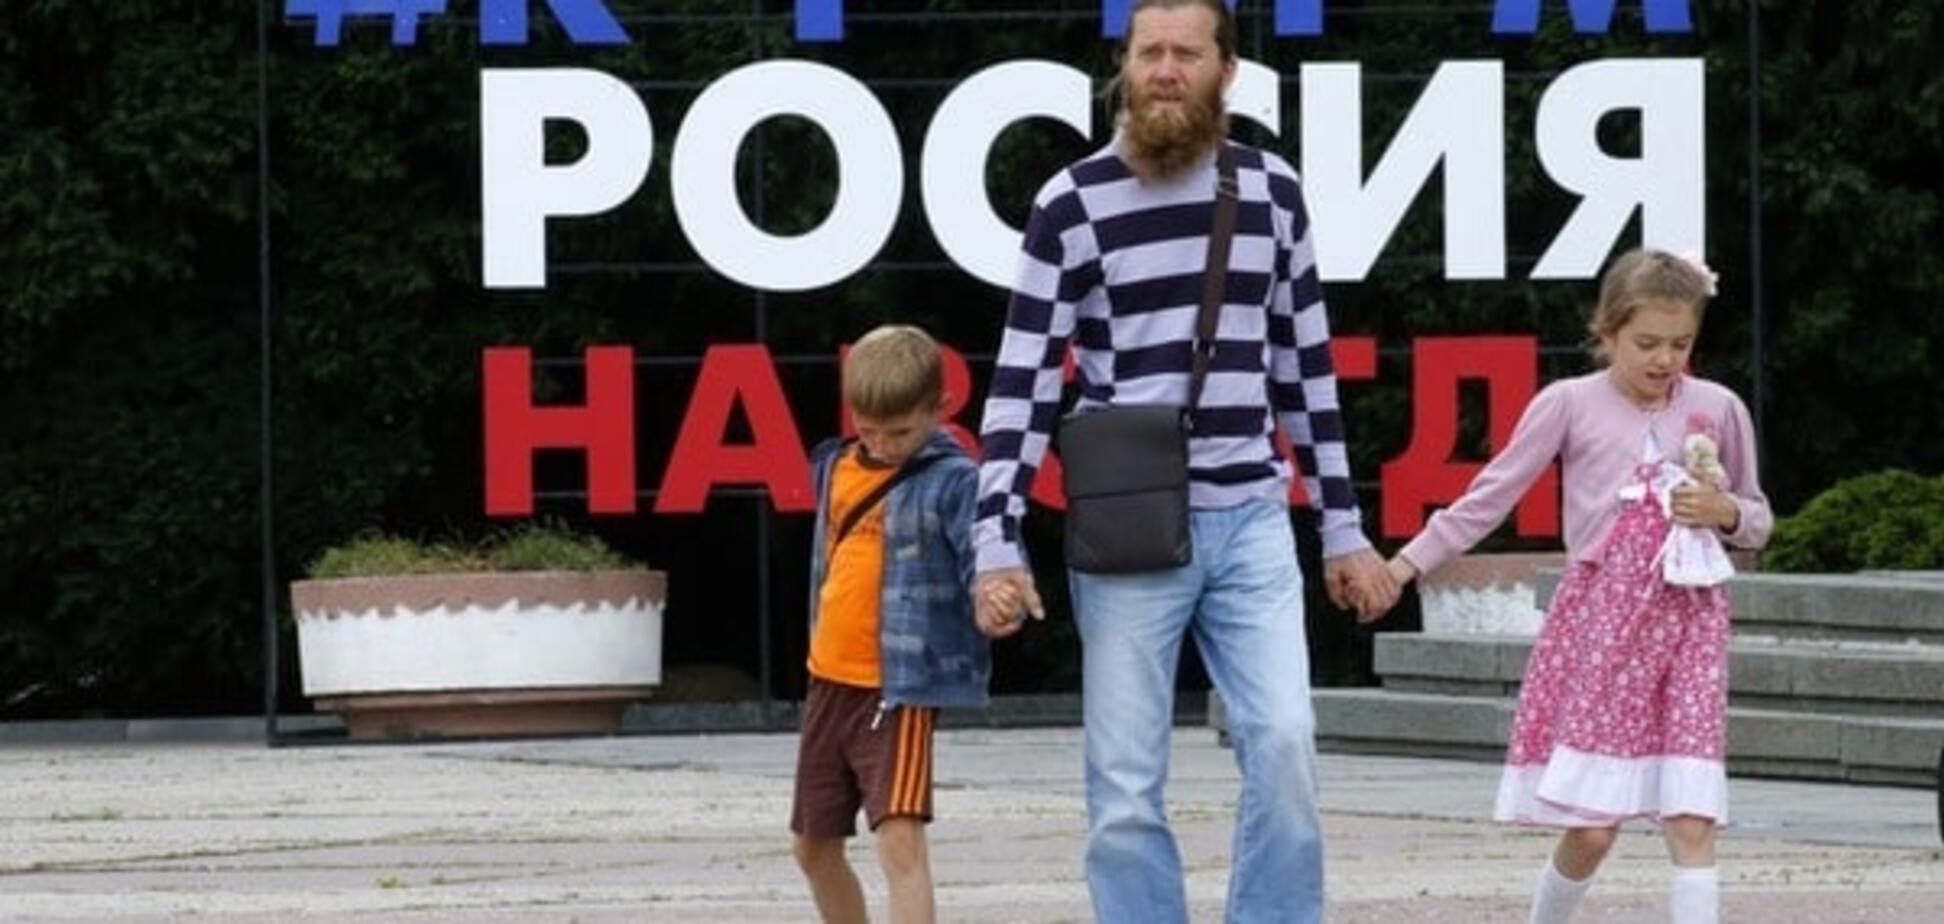 Семья в Крыму